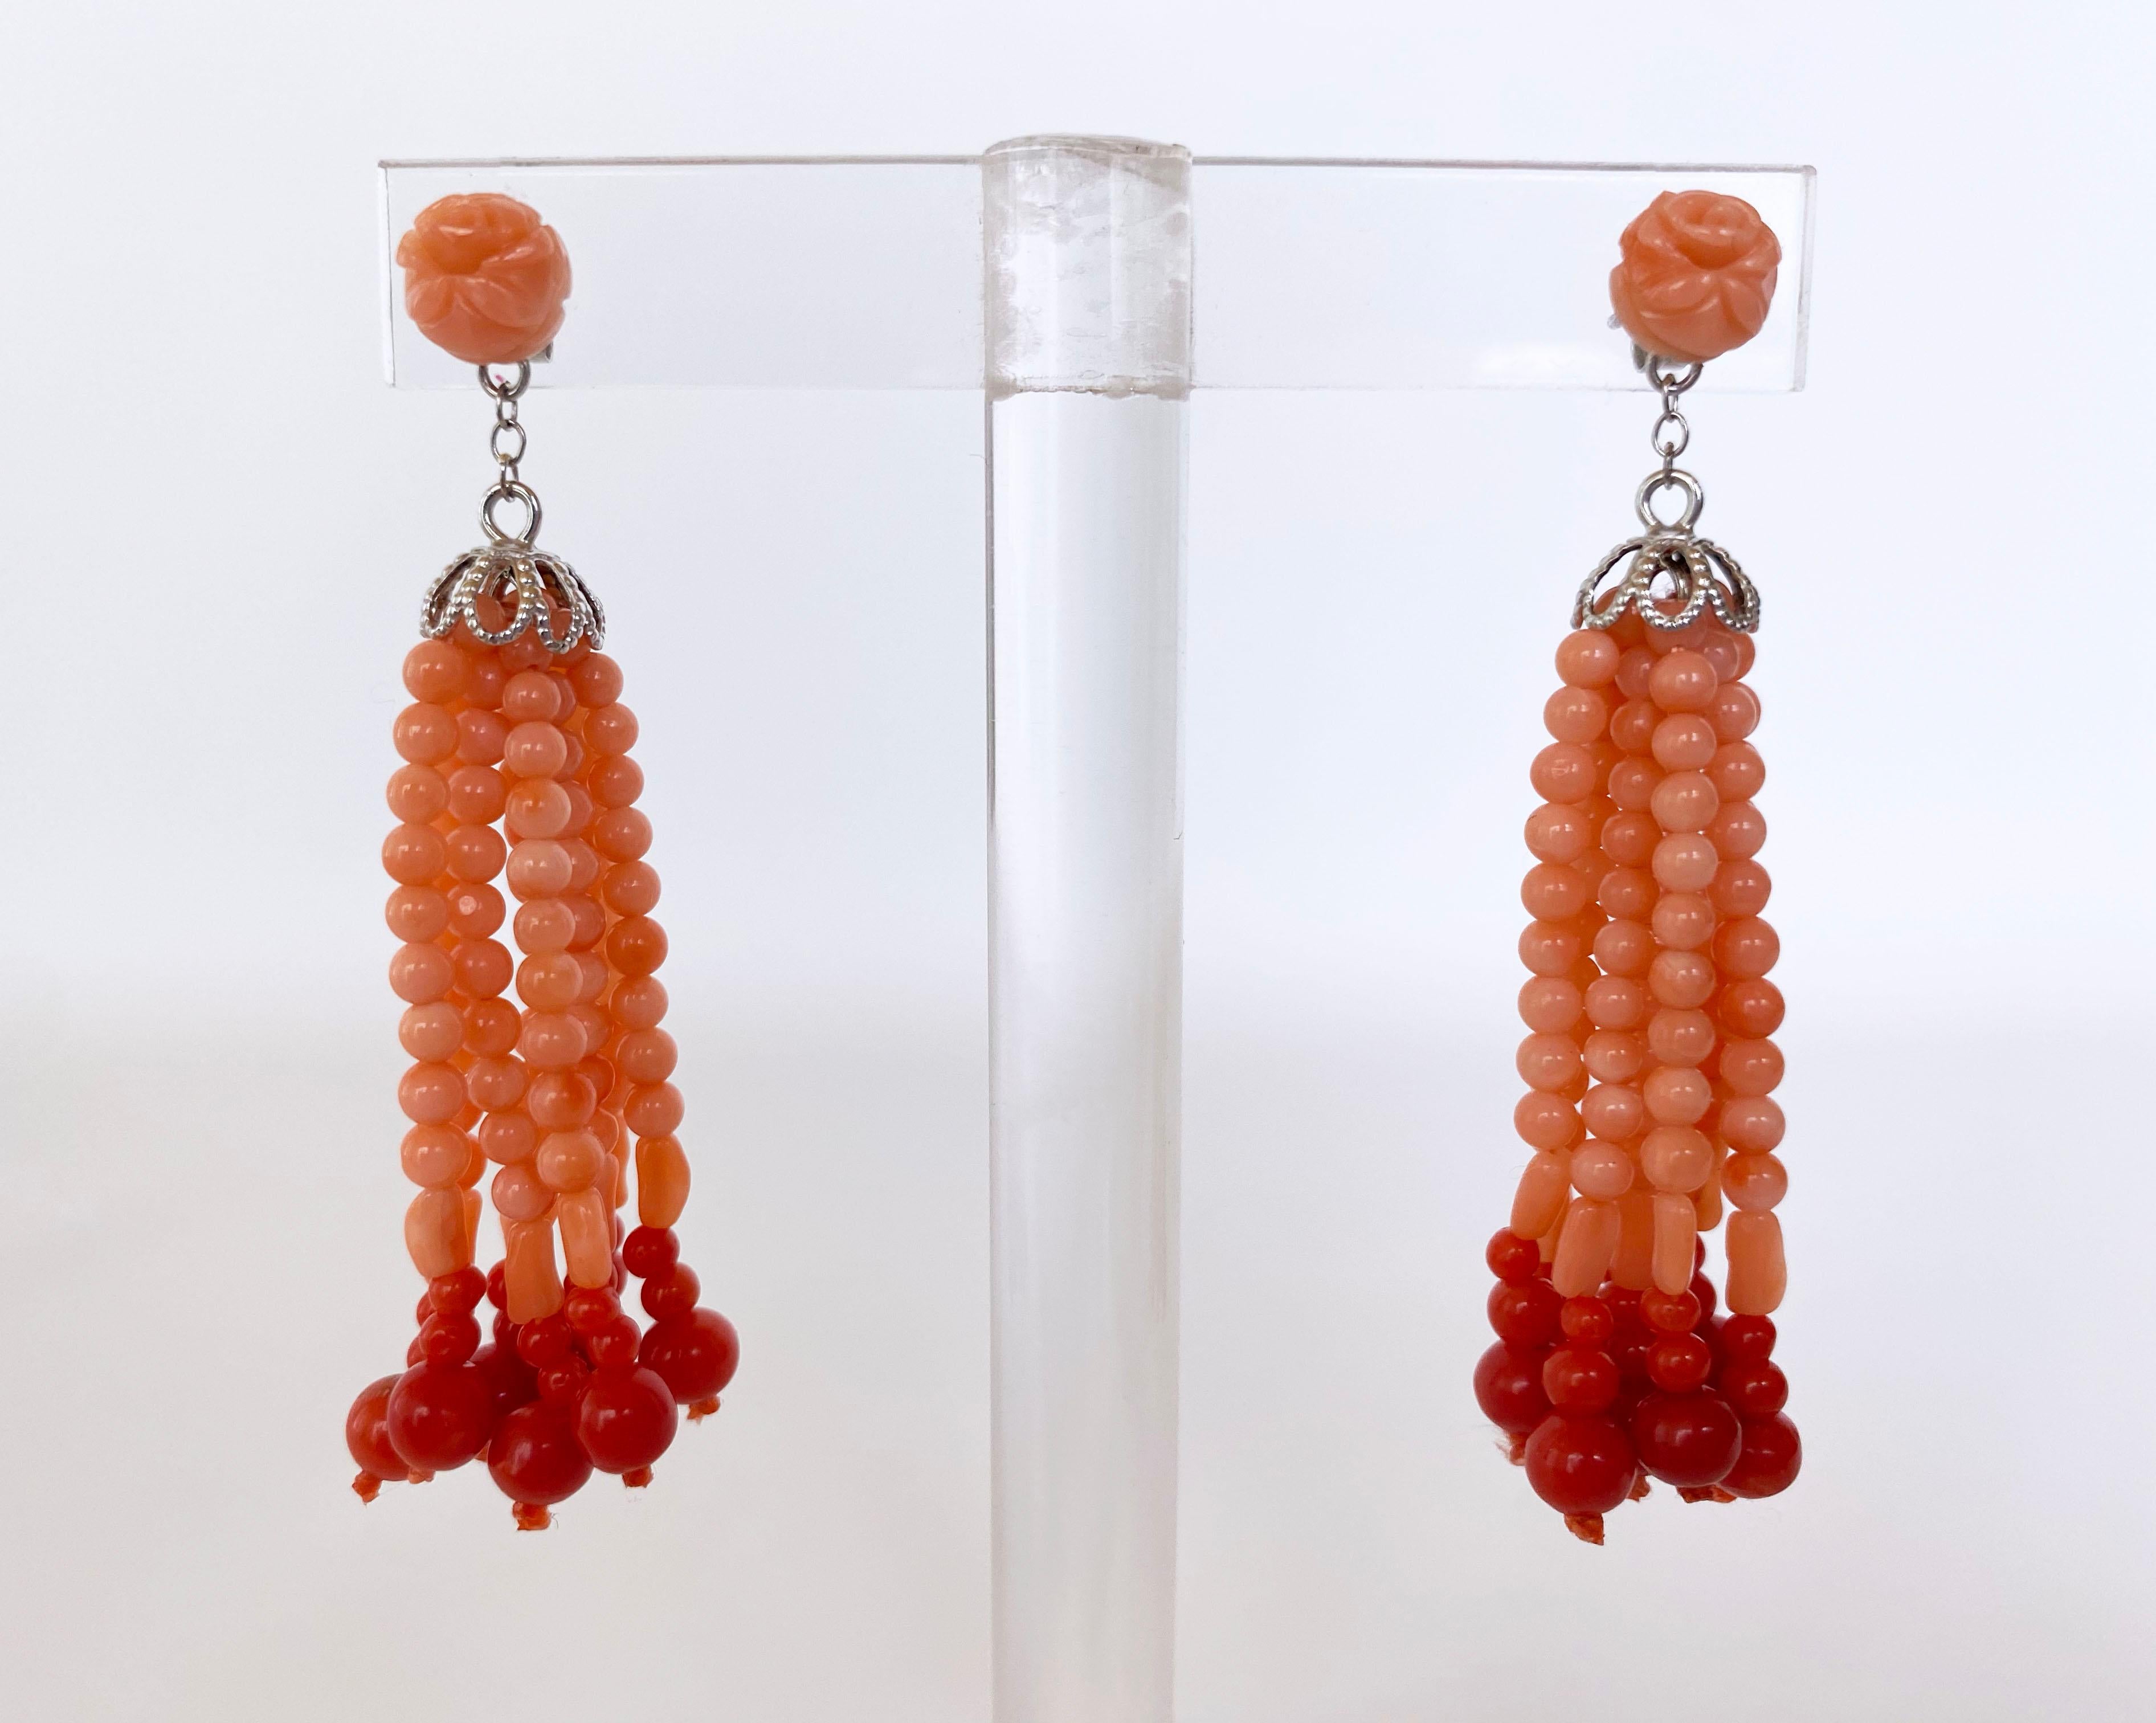 Wunderschönes und verspieltes Paar Ohrringe von Marina J. Dieses unschuldige Paar besteht aus mediterranen Korallenperlen in einem wunderschönen zarten Rosa/Orange-Ton, die mit einer leichten Abstufung aneinandergereiht sind und durch rote